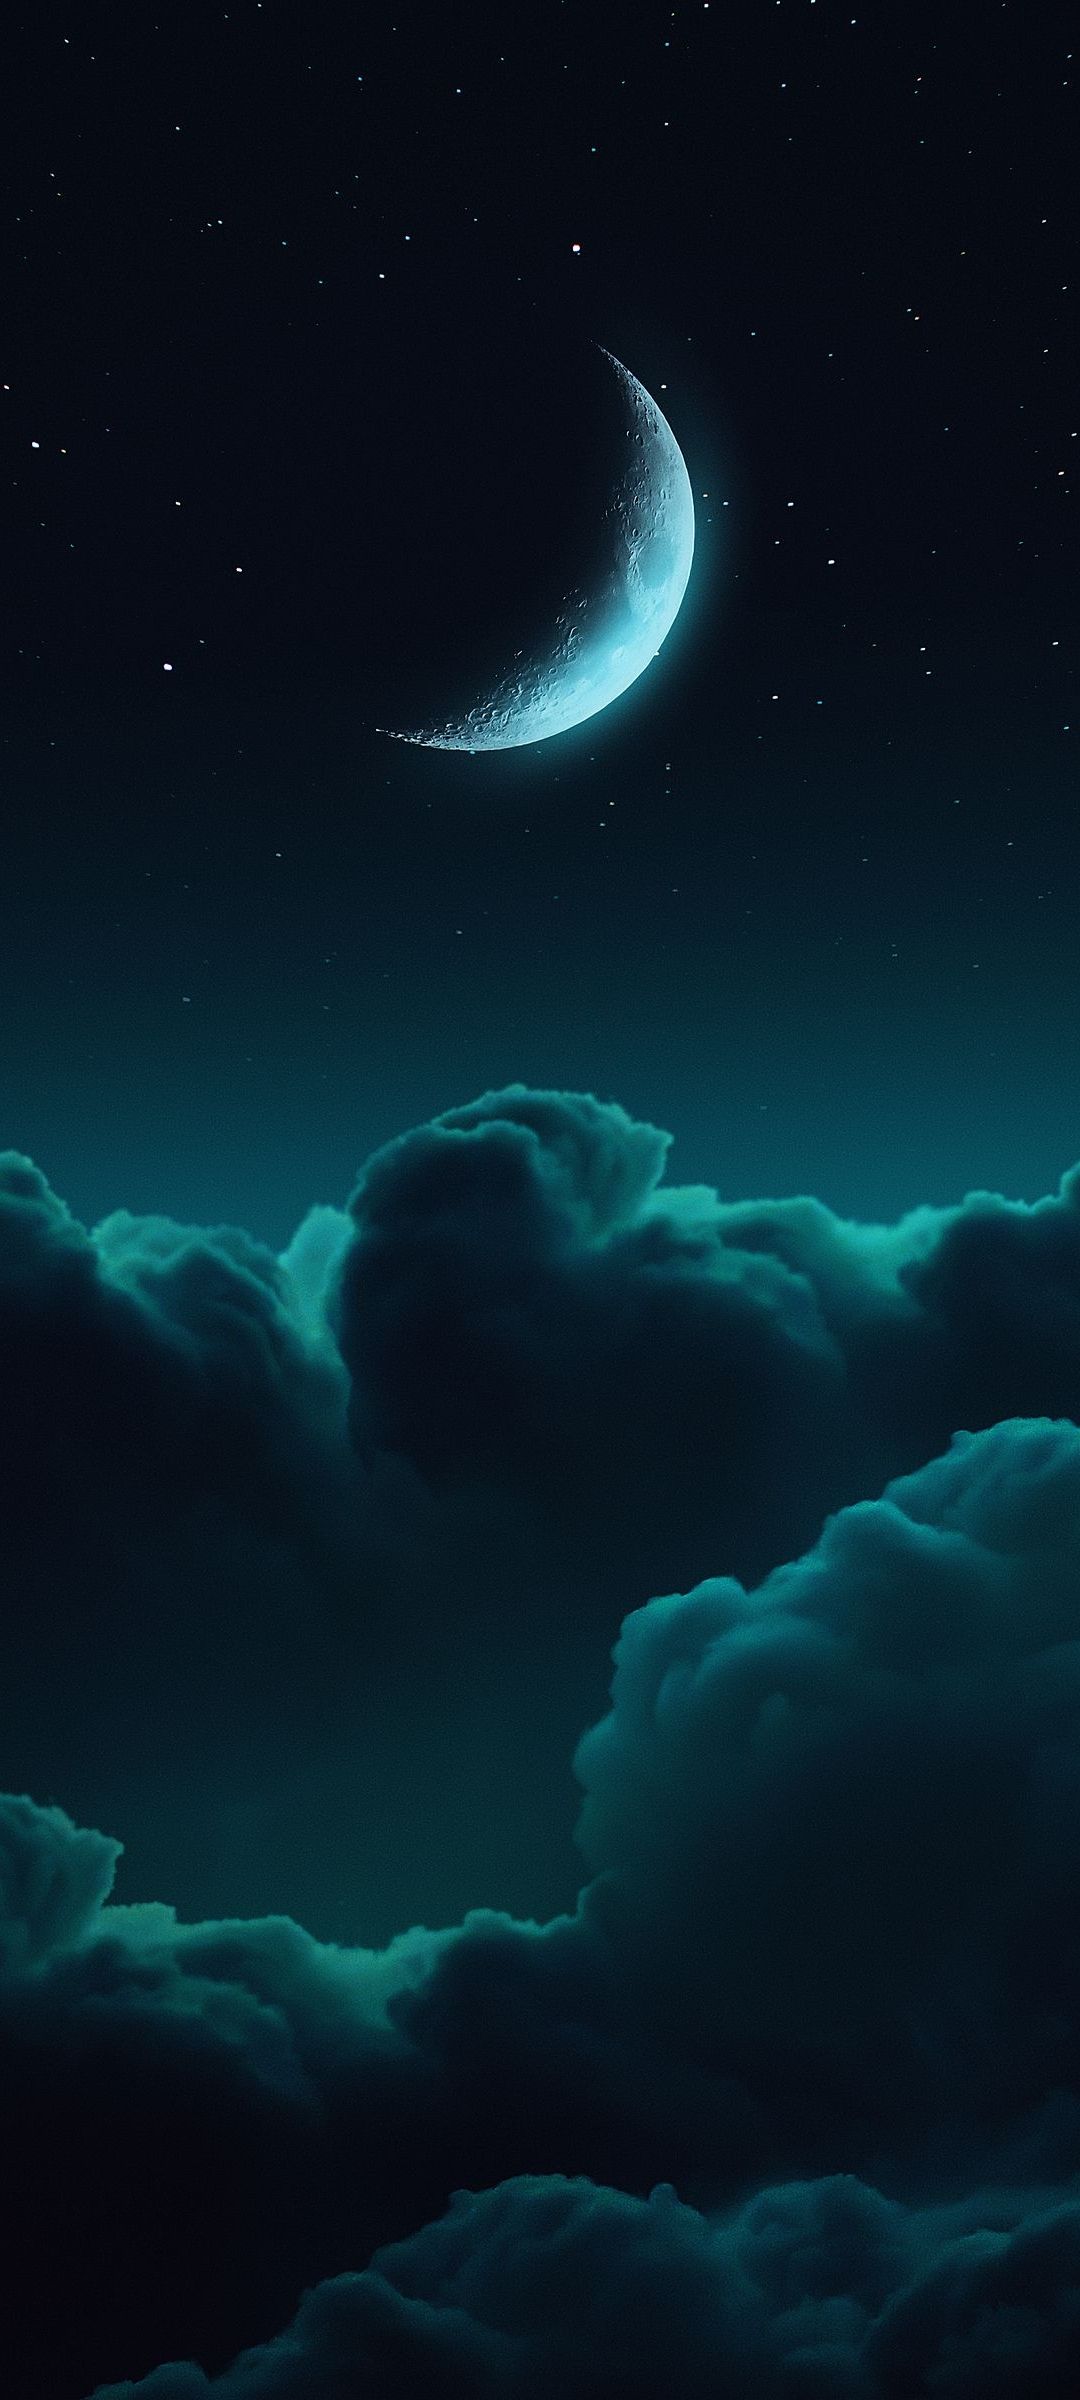 青い月と雲 Galaxy S21 5g Androidスマホ壁紙 待ち受け スマラン